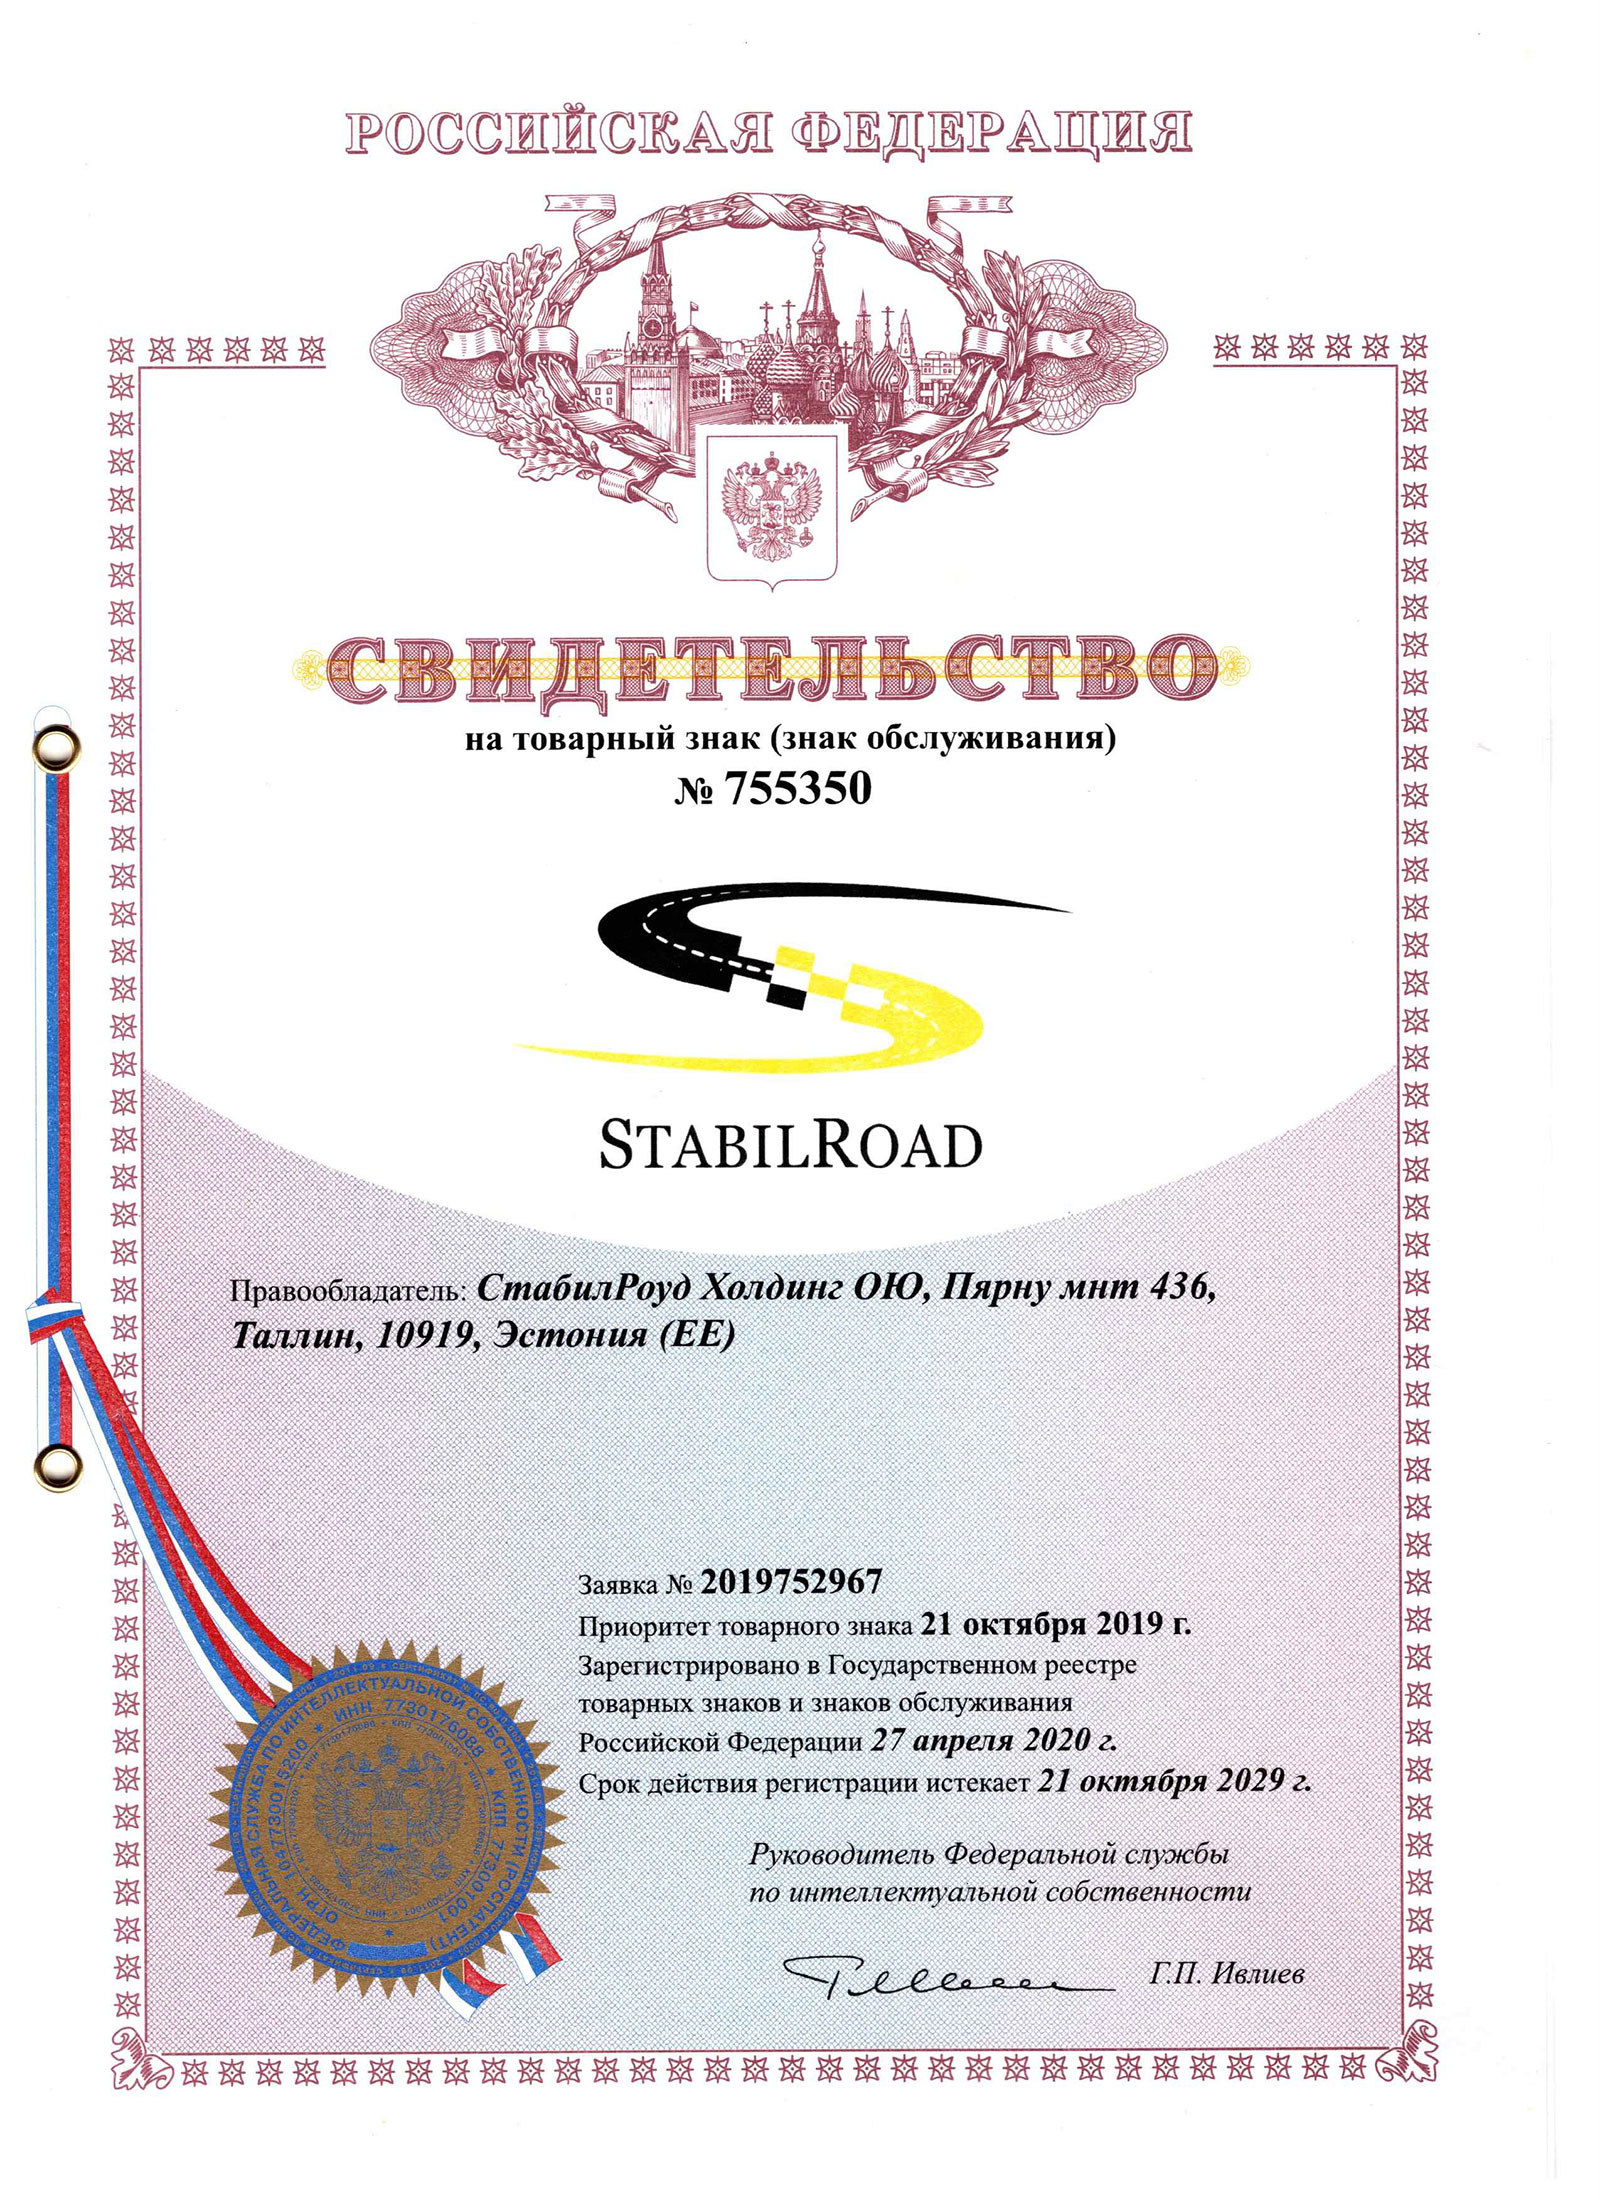 Certificate 755350-TM-450-23RU